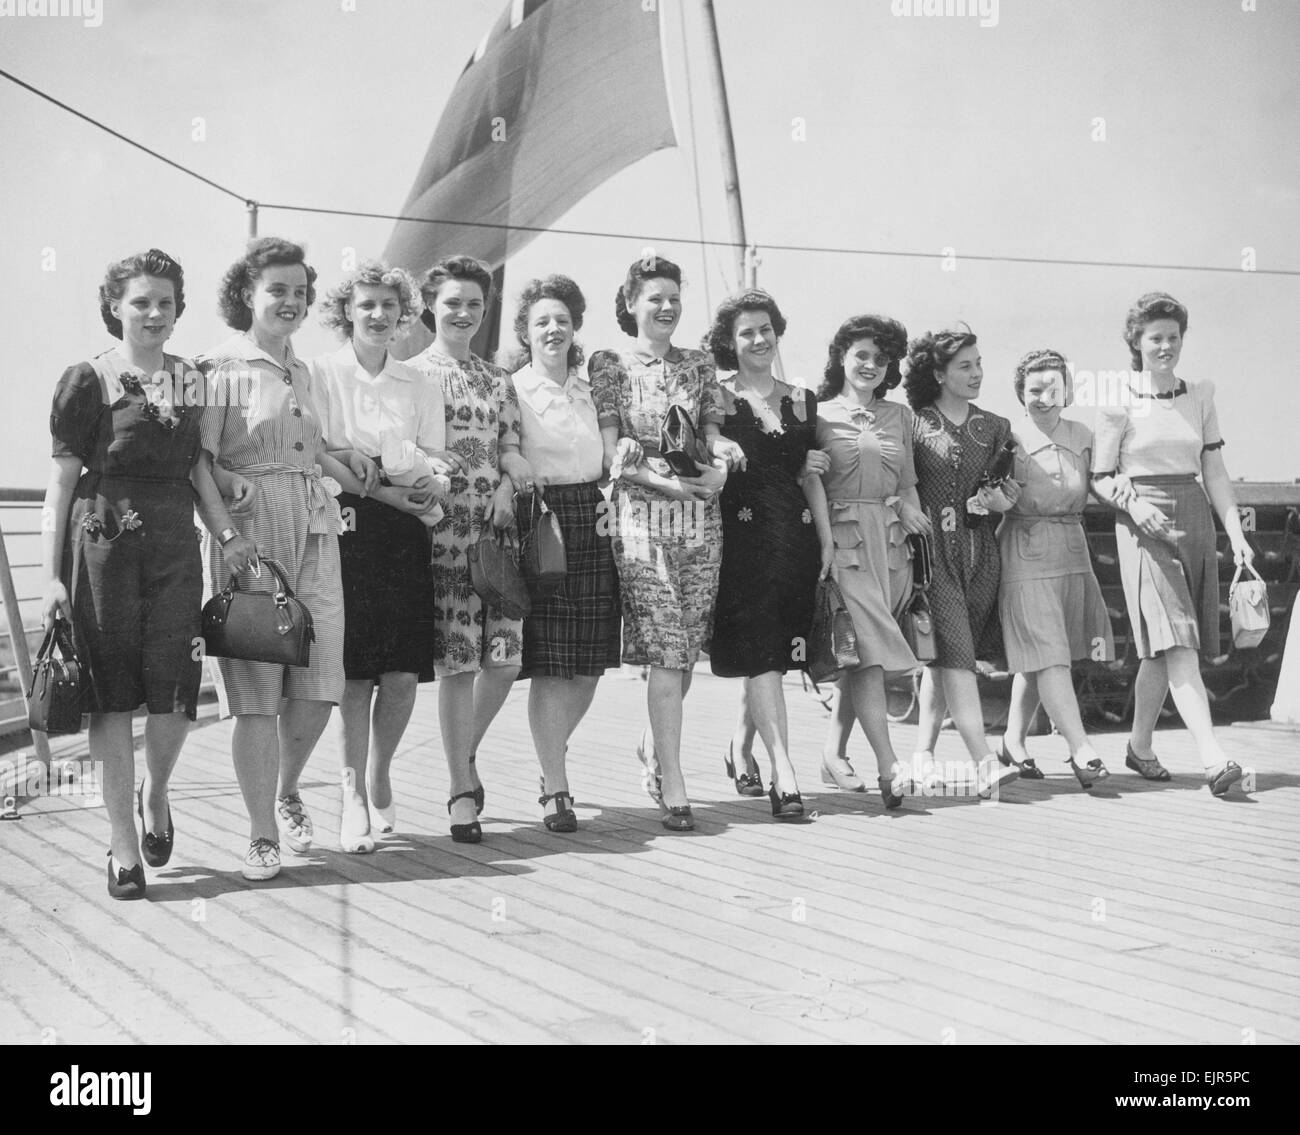 Elf Glasgow Mädchen nahmen ihre letzten Blick auf England, wenn sie auf der Orion für Australien segelte. Sie sind Mitglieder des Personals der eine Elektrofirma in Glasgow, die sie draußen gesandt haben, um ein neues Leben beginnen in der Firmen-Pendant-Fabrik in der Nähe von Adelaide. Unser Bild zeigt: Die Mädchen zu Fuß auf dem Deck. 3. Juni 1947. Stockfoto